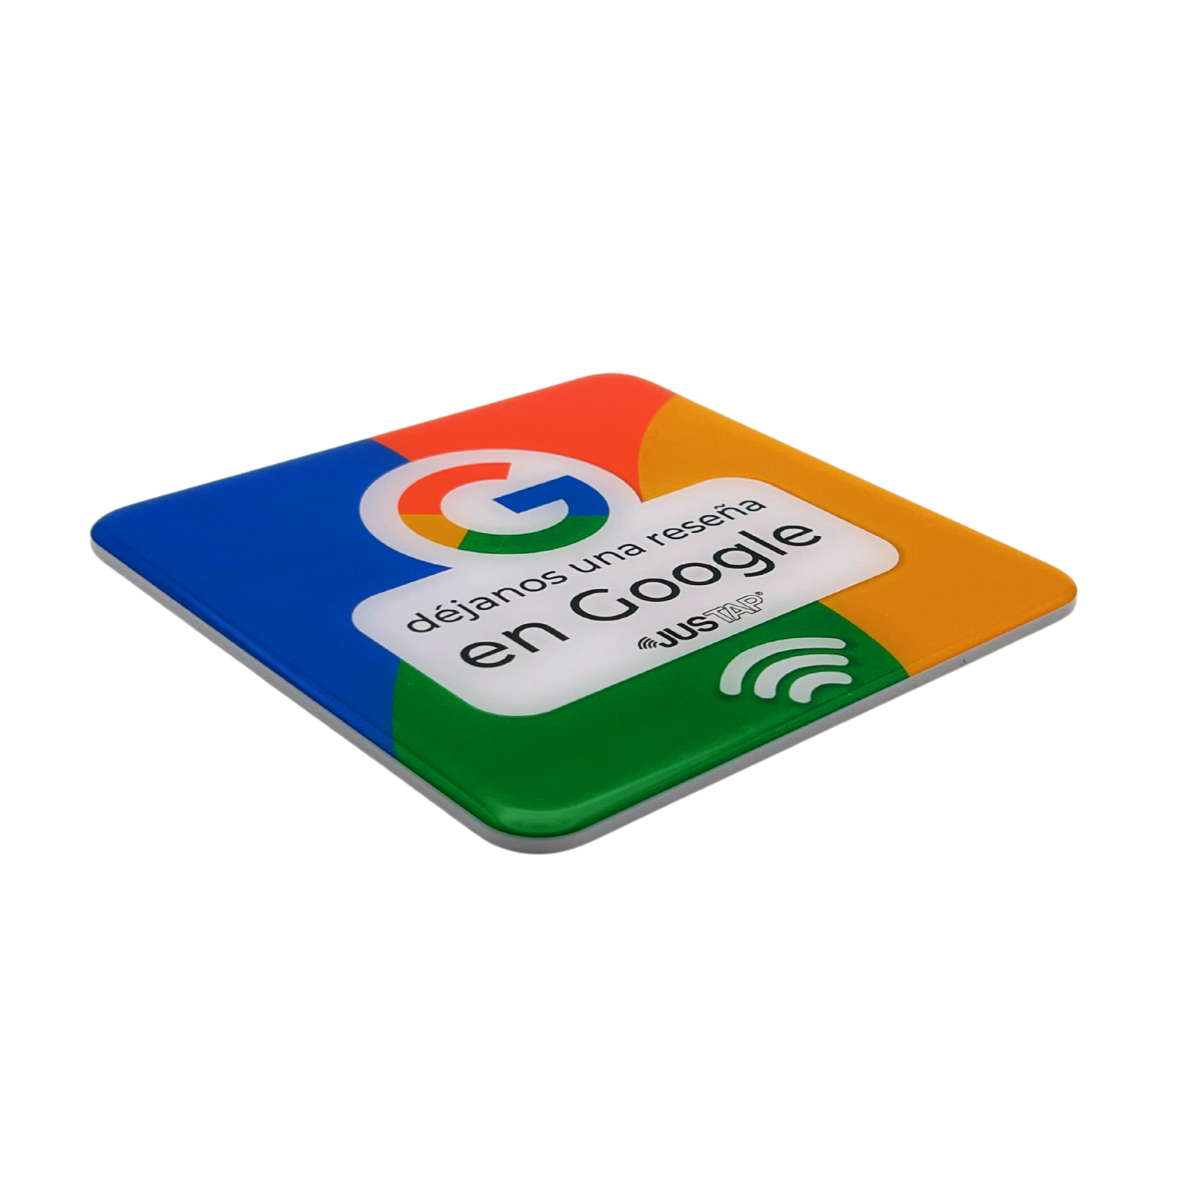 Adhesivo de resina JUSTAP® con NFC para reseñas de Google